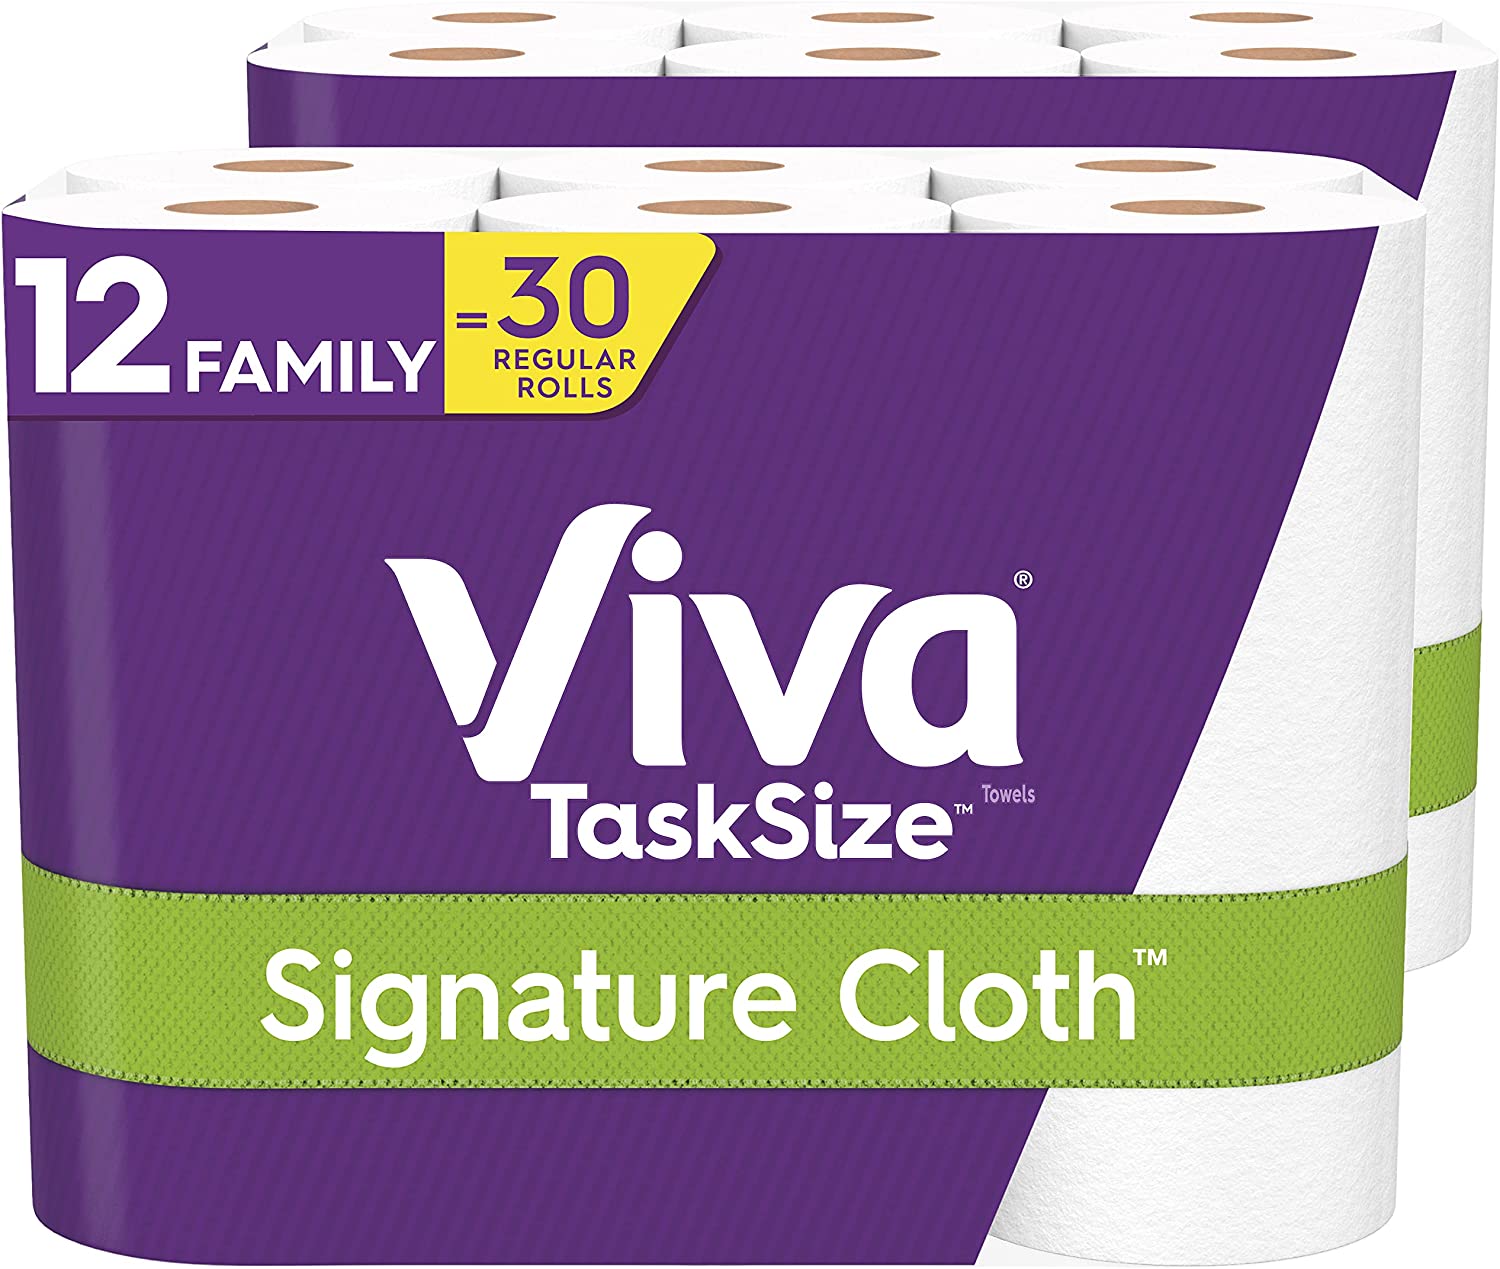 Viva Signature Cloth Tough Paper Towels